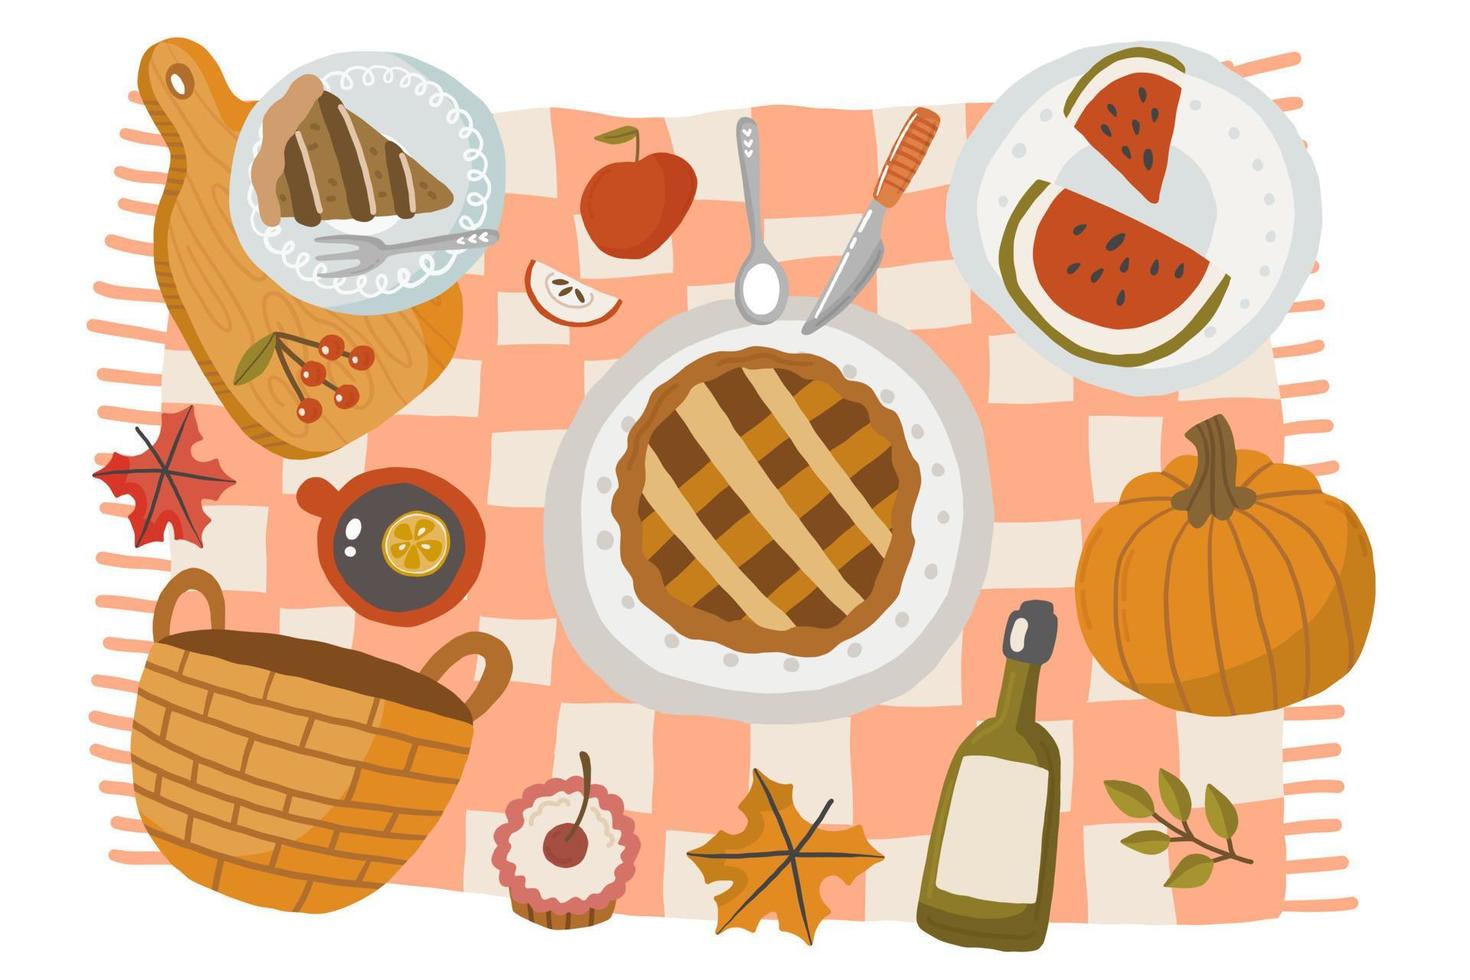 escena de picnic de otoño con sabrosa comida de temporada, decoración, atuendo. tarta de manzana, calabaza, fruta, vino, croissant, té. alimentos sanos y saludables al aire libre. ilustración vectorial de dibujos animados vector